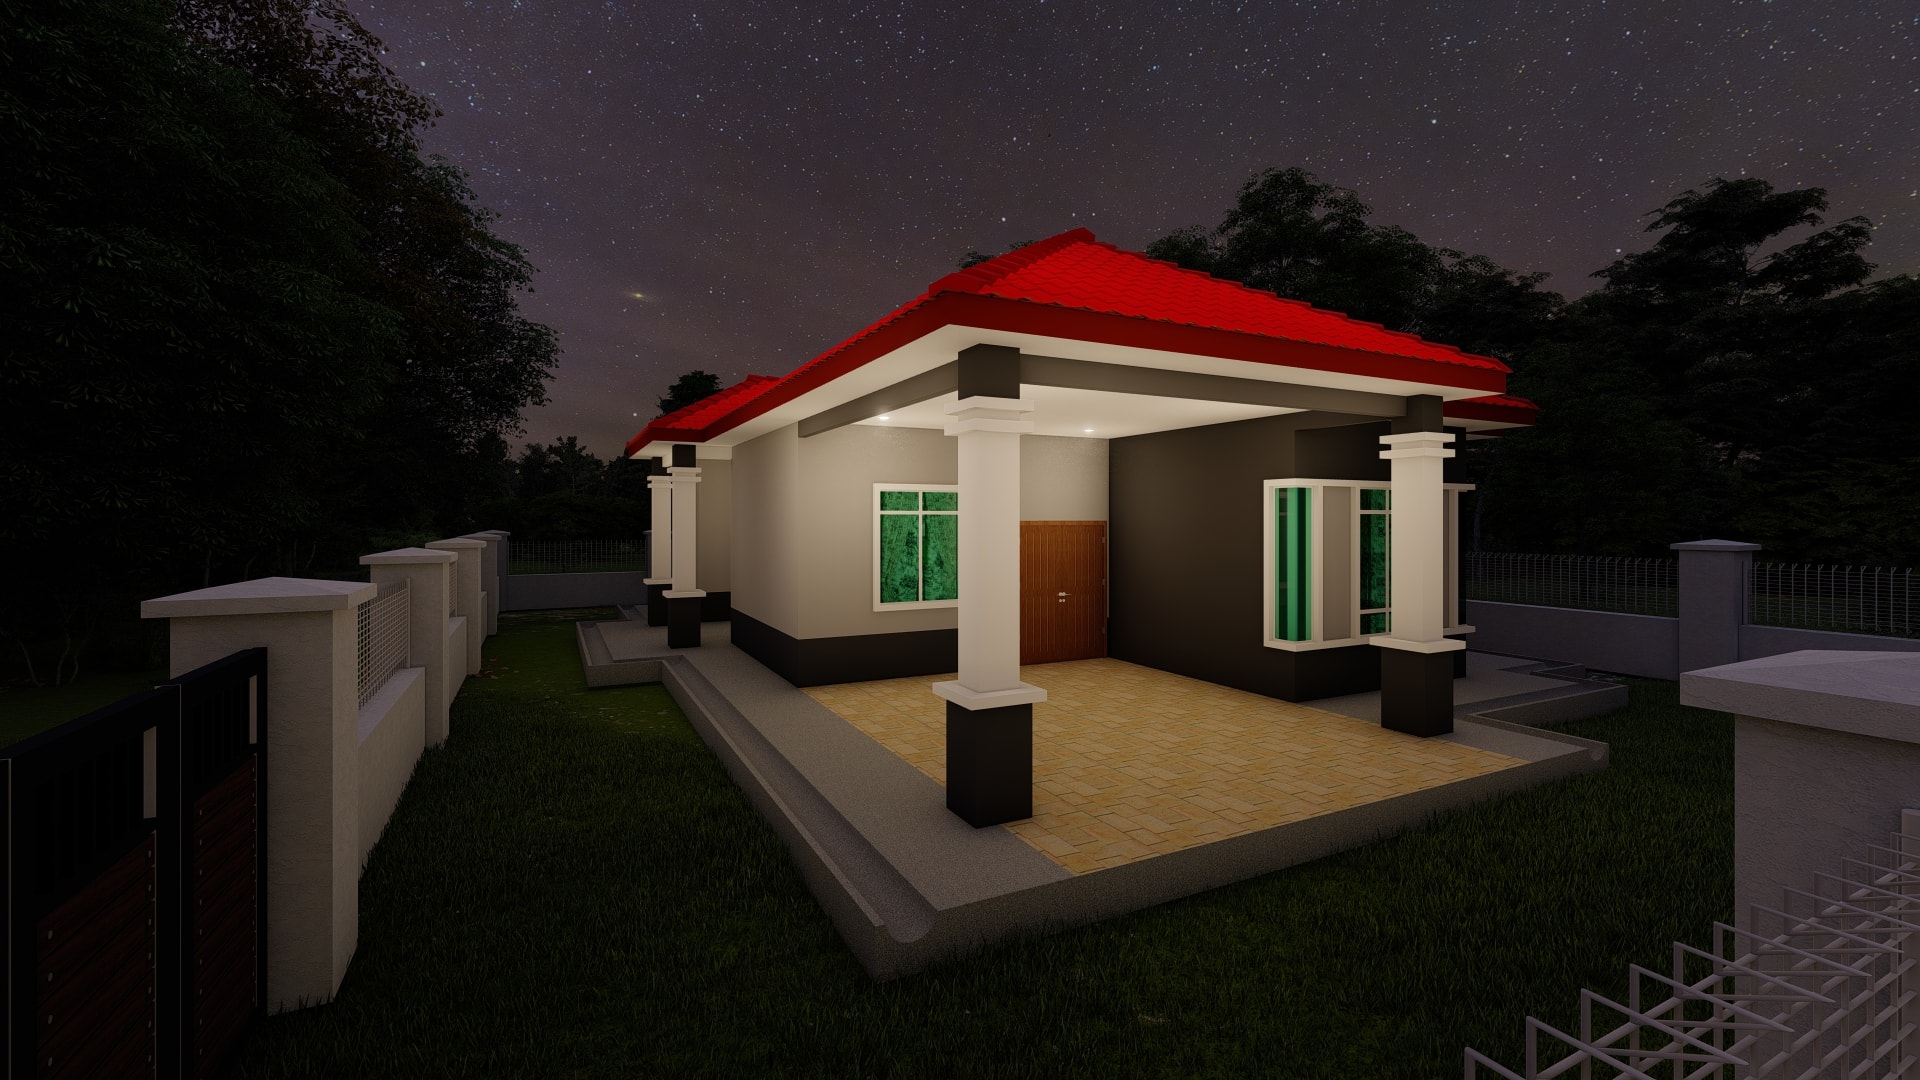 Bina Rumah Pasir Gudang 17 March 2020